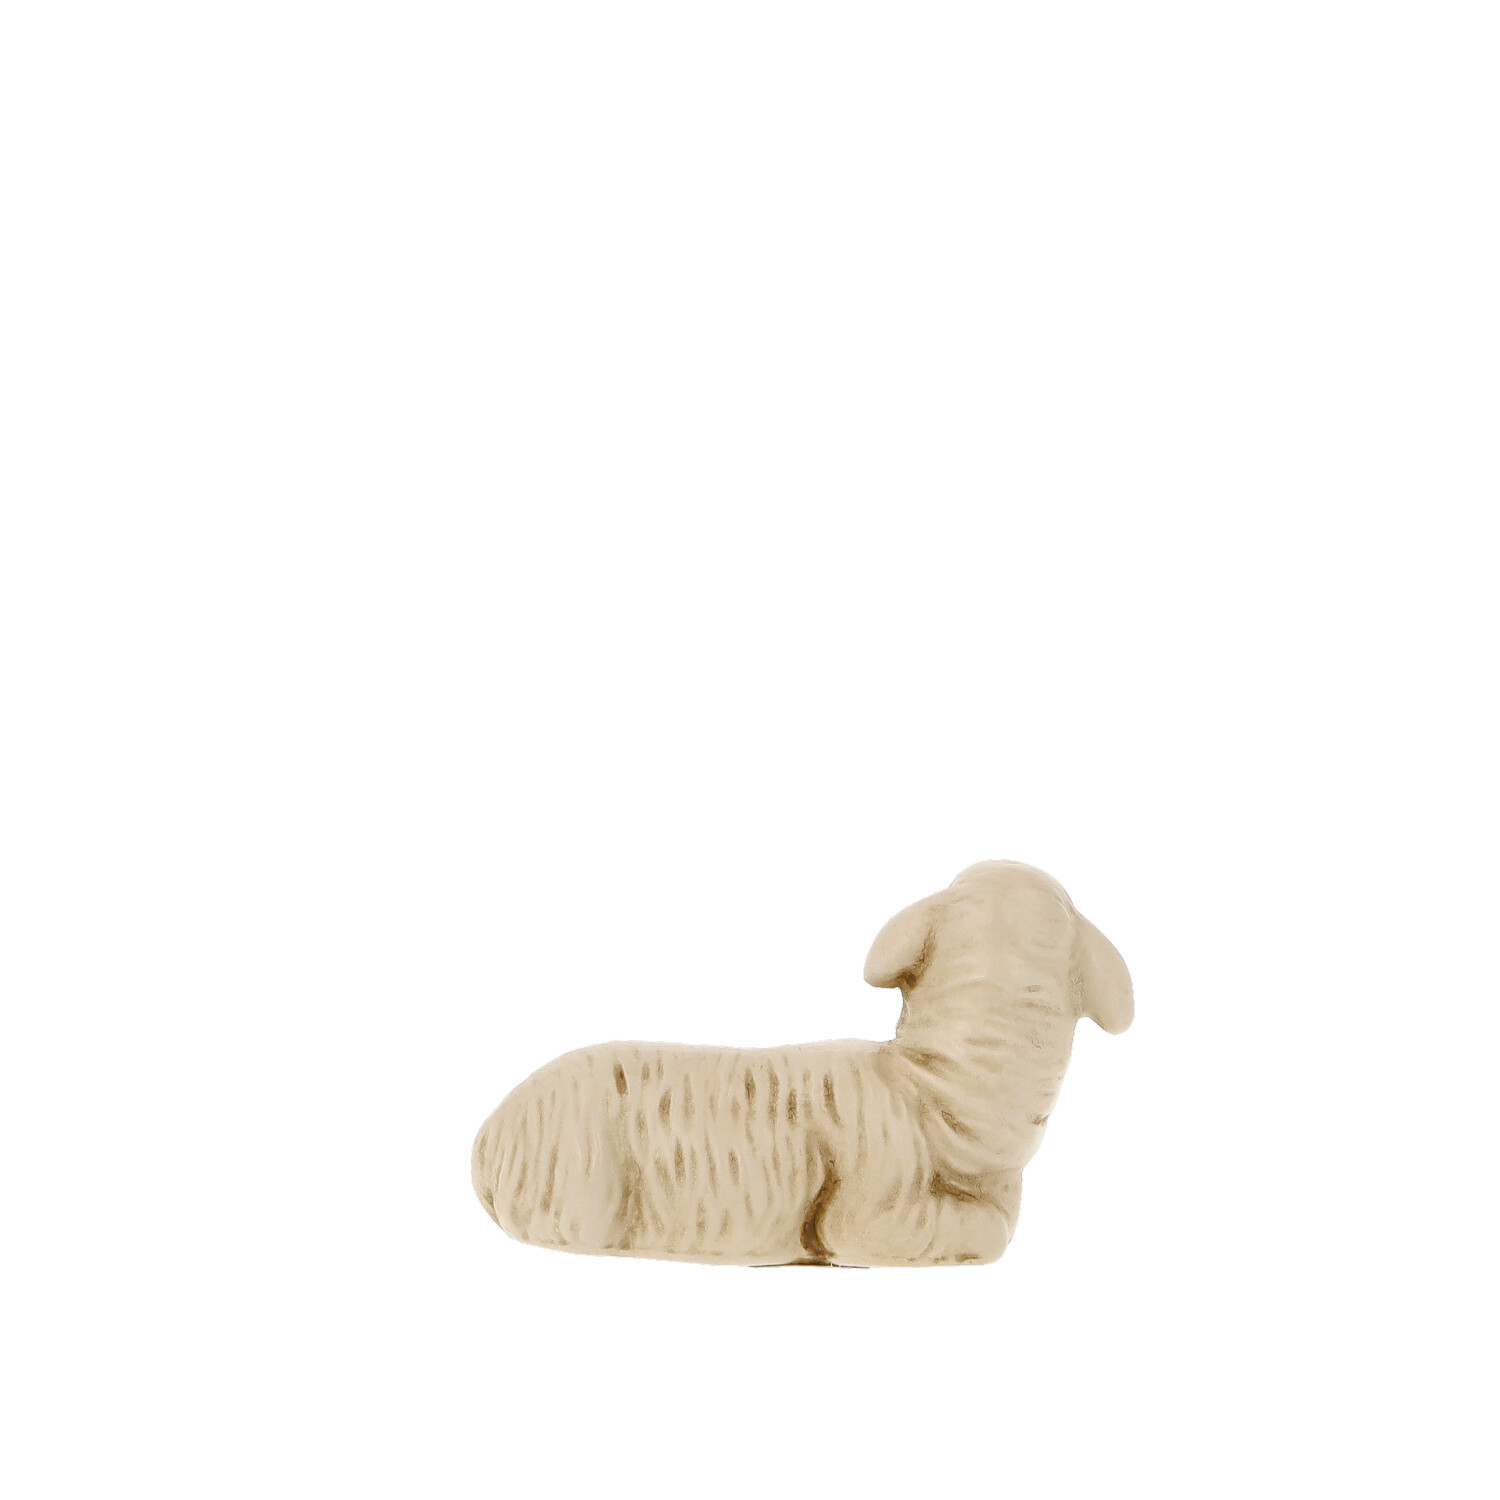 Schaf liegend, nach links blickend, zu 14cm Figuren passend